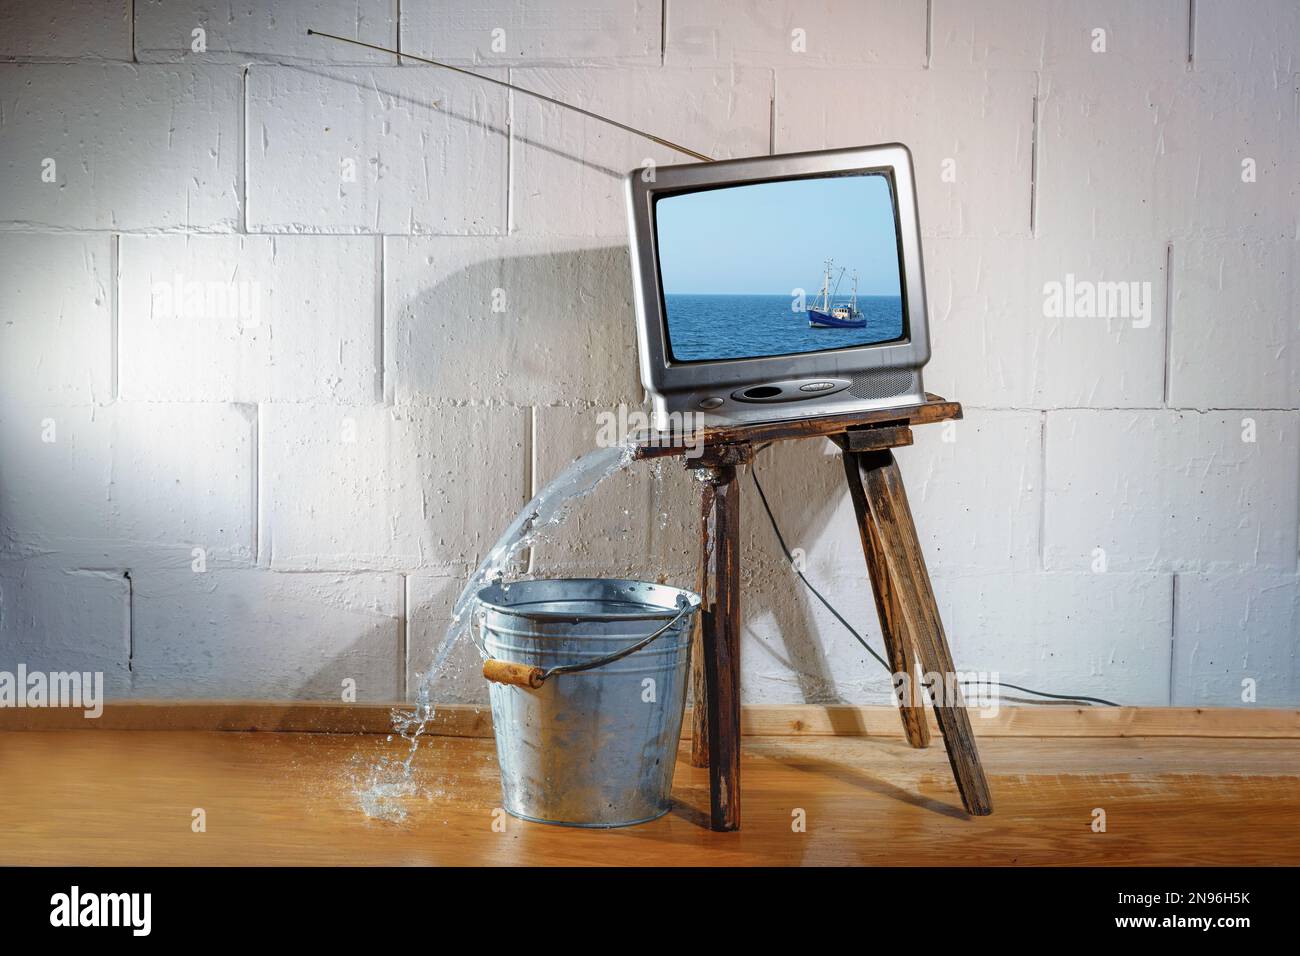 Ein alter Vintage-fernseher auf einem schrägen Holzhocker zeigt einen Film von einem Schiff auf dem Meer, aber das Wasser, das auf den Boden strömt, ohne den Eimer darunter. Gebh Stockfoto